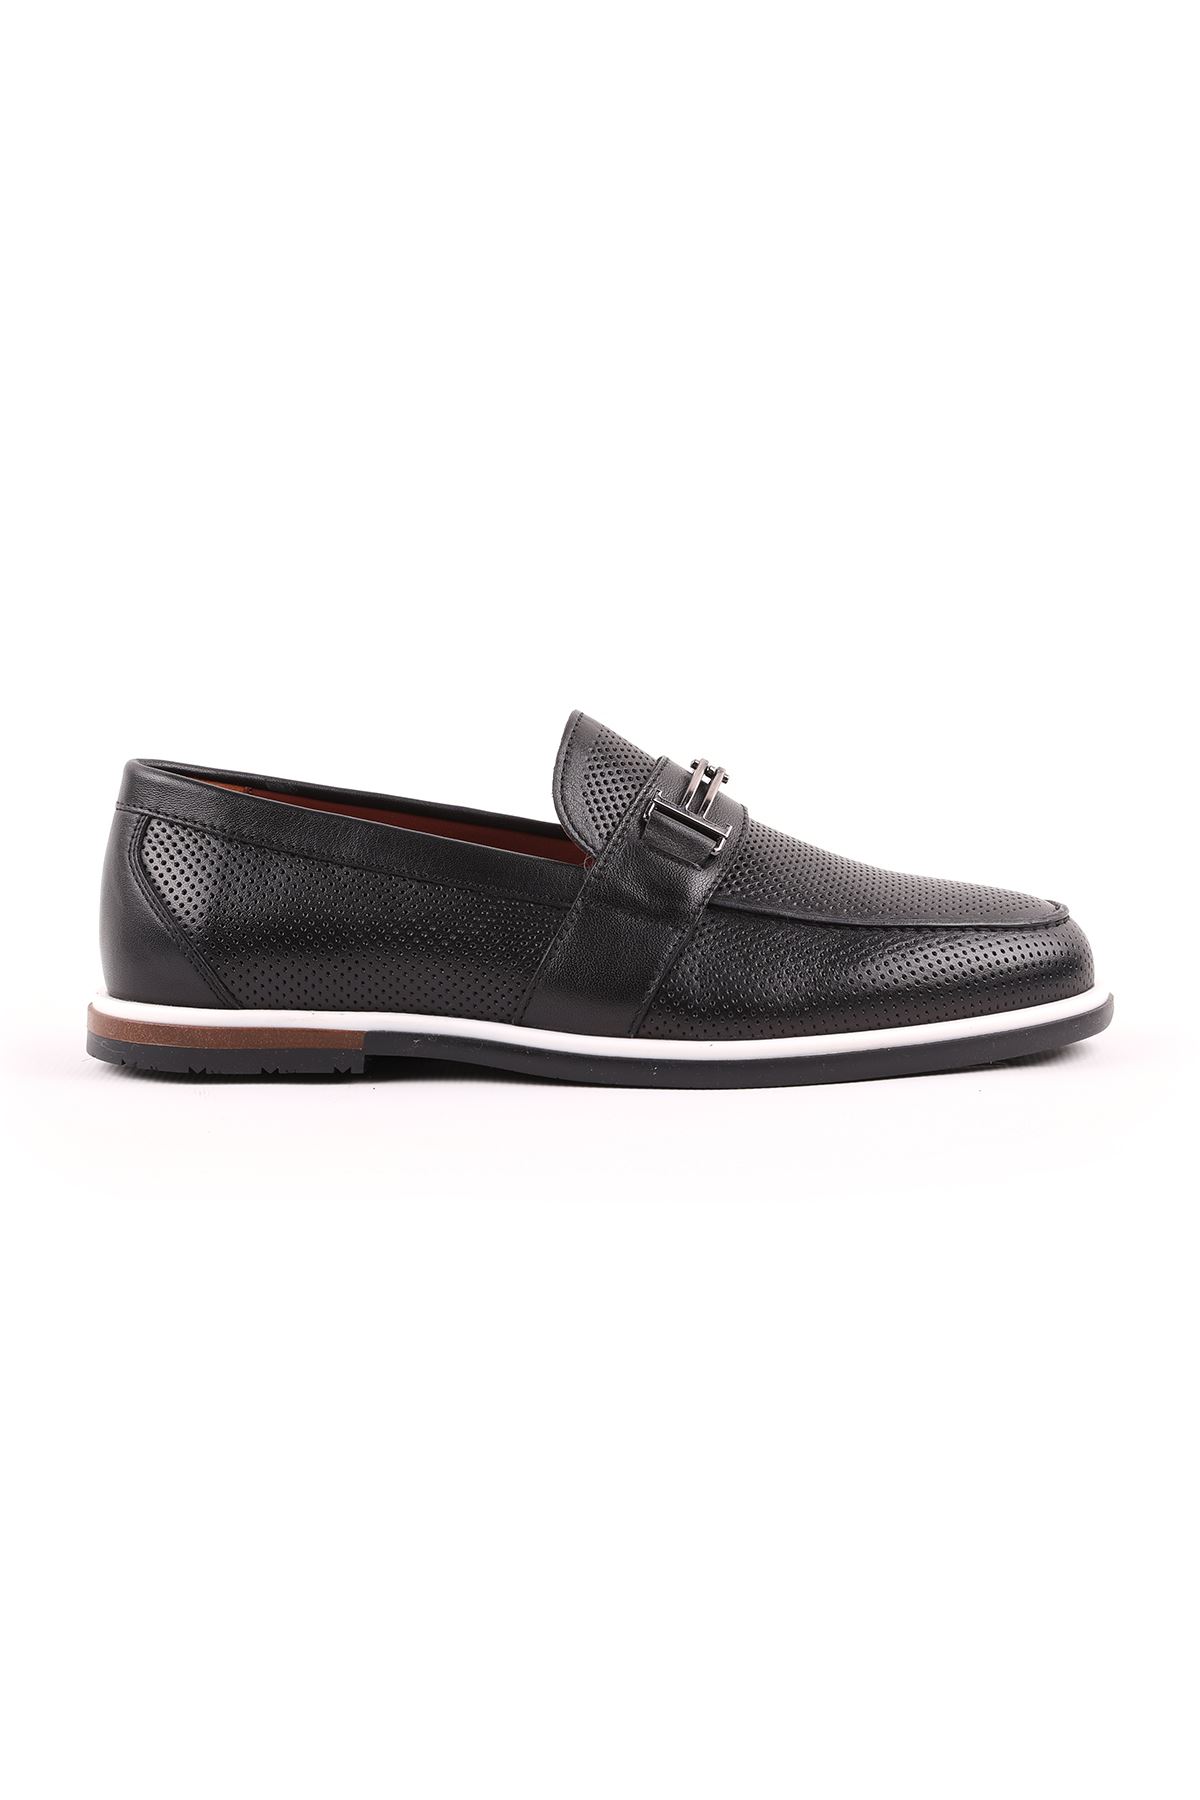 Libero L5219 Siyah Casual Erkek Ayakkabı 